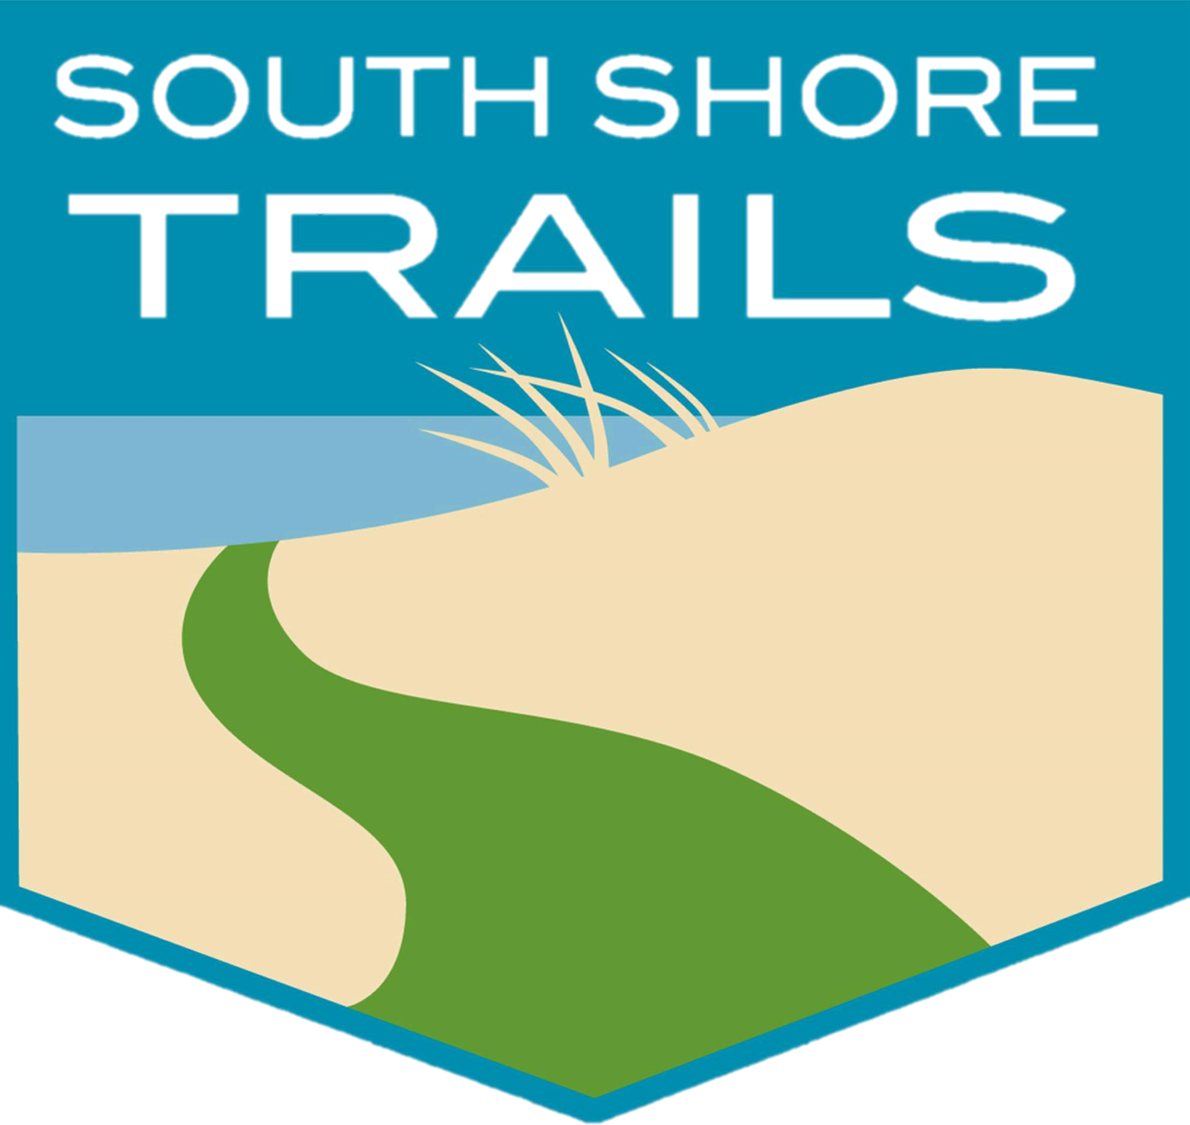 South Shore Trails